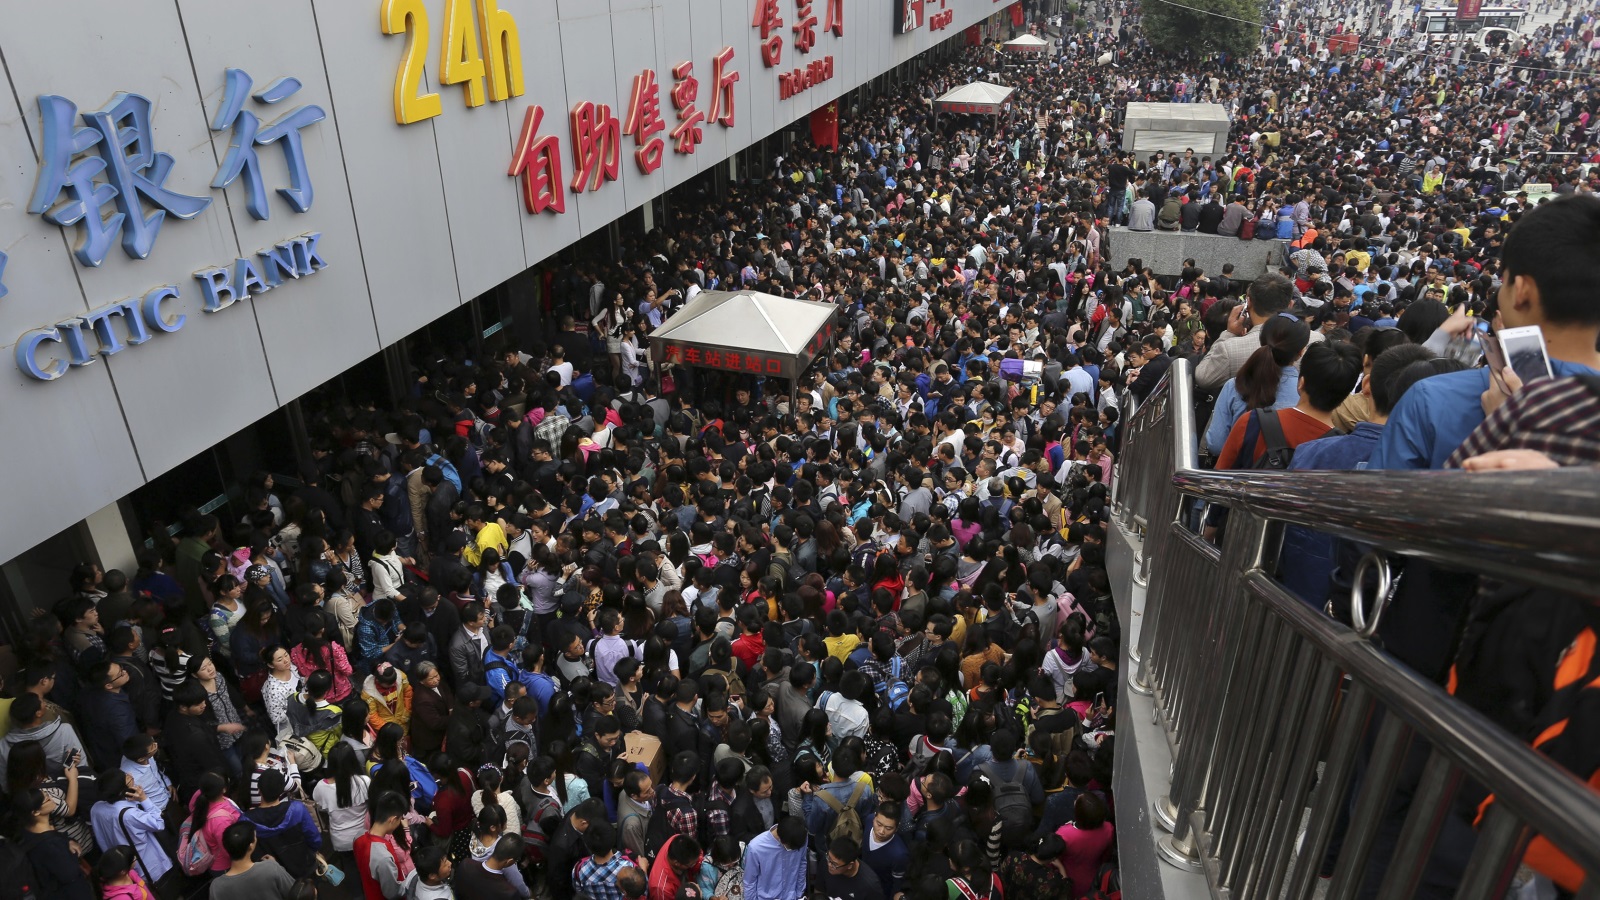  باحث أميركي: أرقام التعداد السكاني في الصين مبالغ فيها (رويترز)